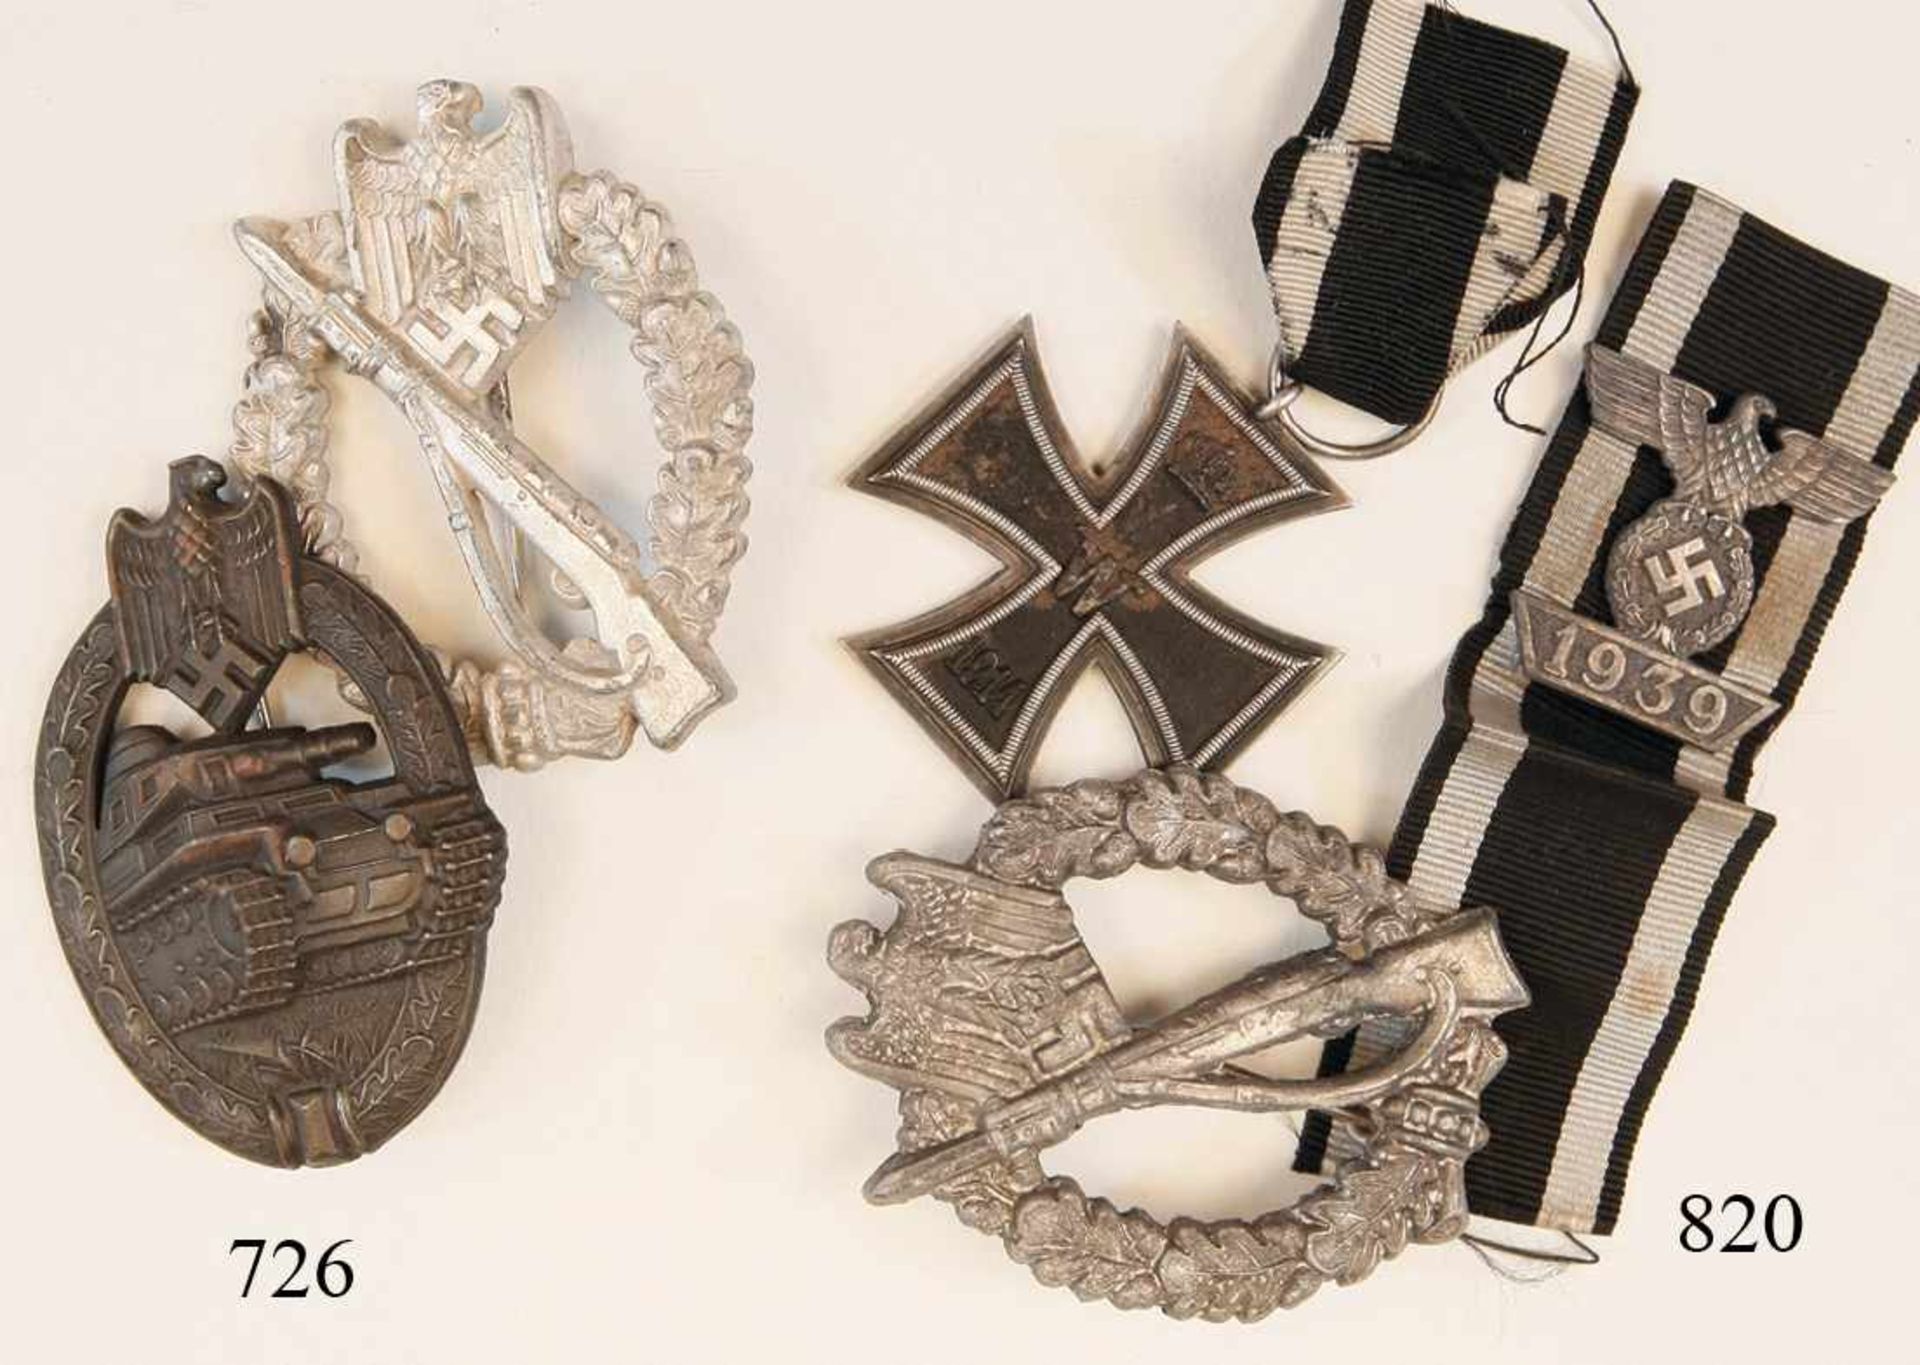 2 AuszeichnungenInfanteriesturmabz. Buntmetall, Hohlprägung. Panzerkampfabzeichen, Bronzestufe.